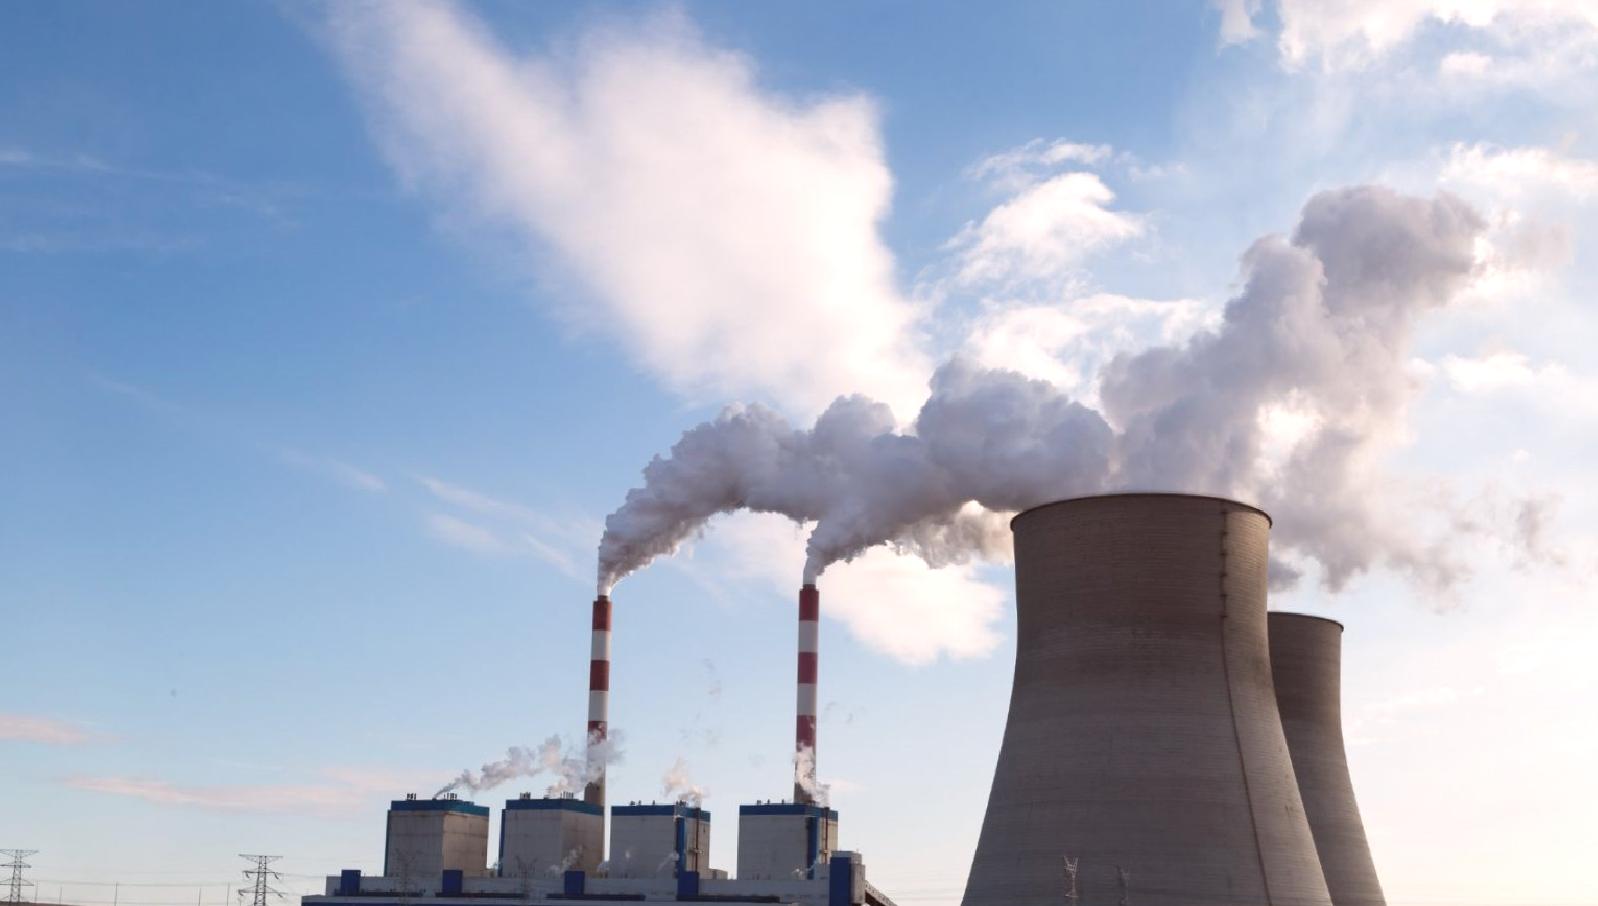 “Termik santrallere verilen havamızı kirletme müsaadesi kabul edilemez” (Termik santraller hayatı tehdit ediyor!)